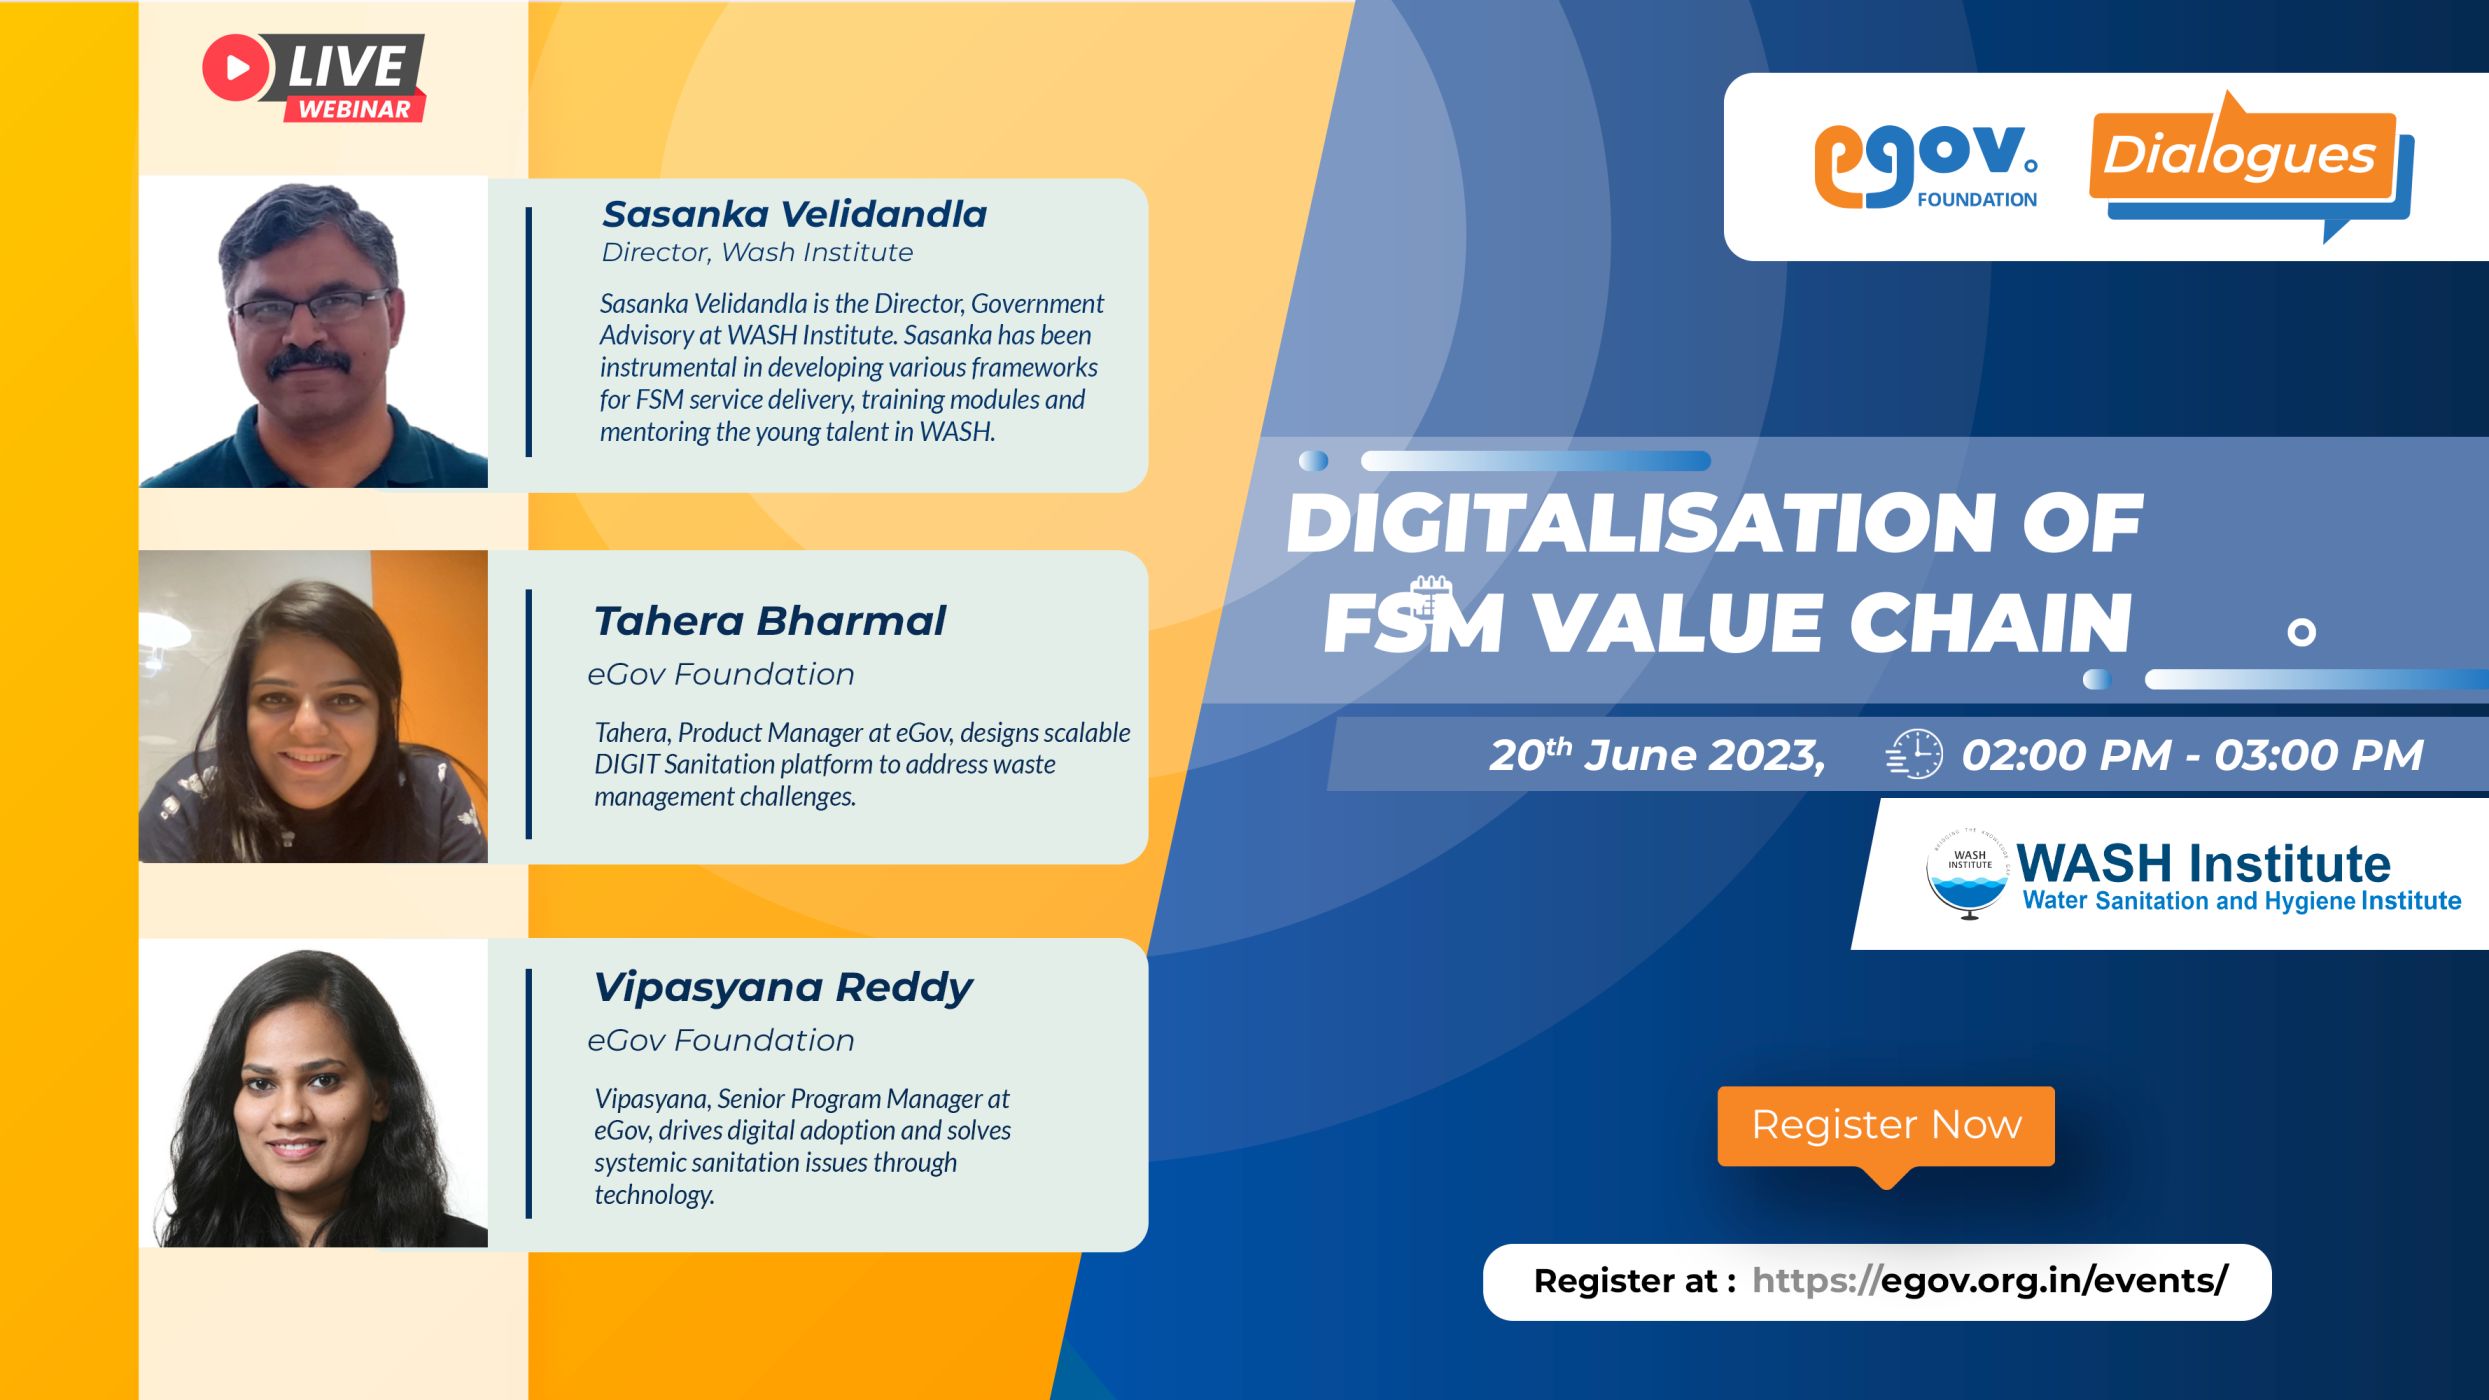 eGov-Dialogues-_Digitalisation-of-FSM-value-chain